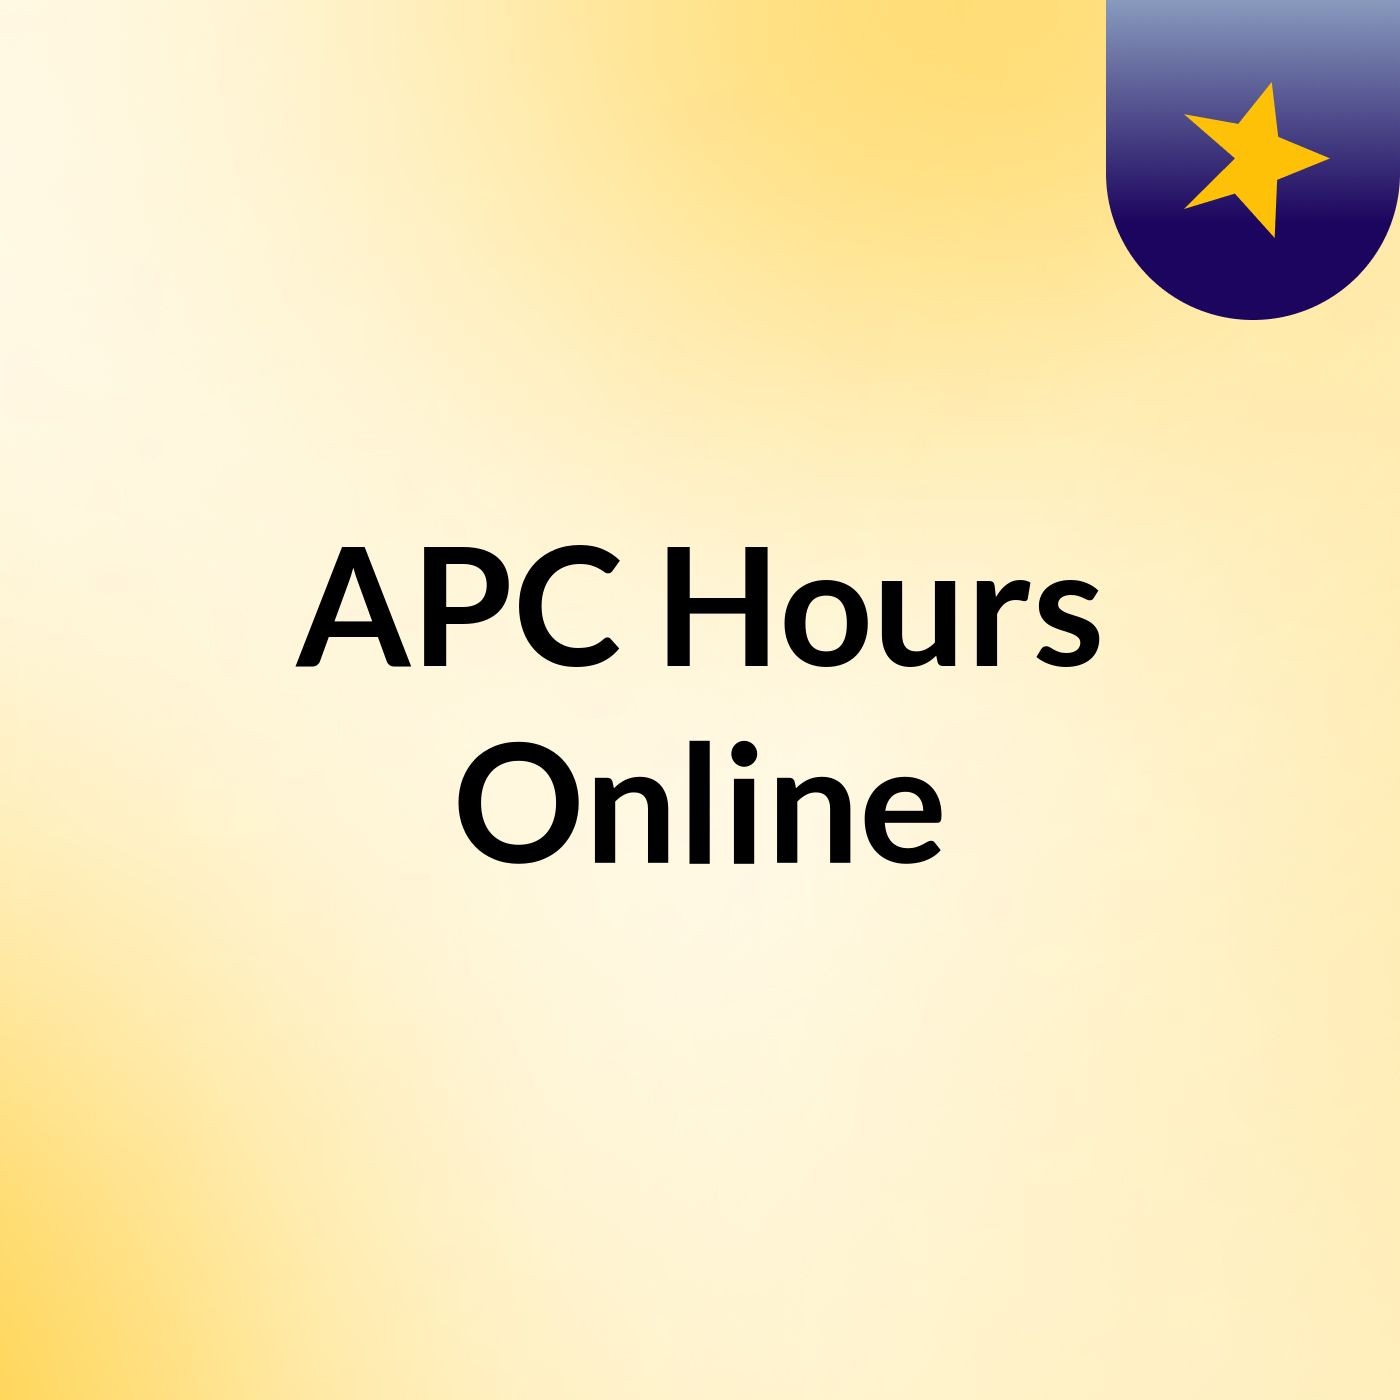 Episode 1 - APC Hours Online